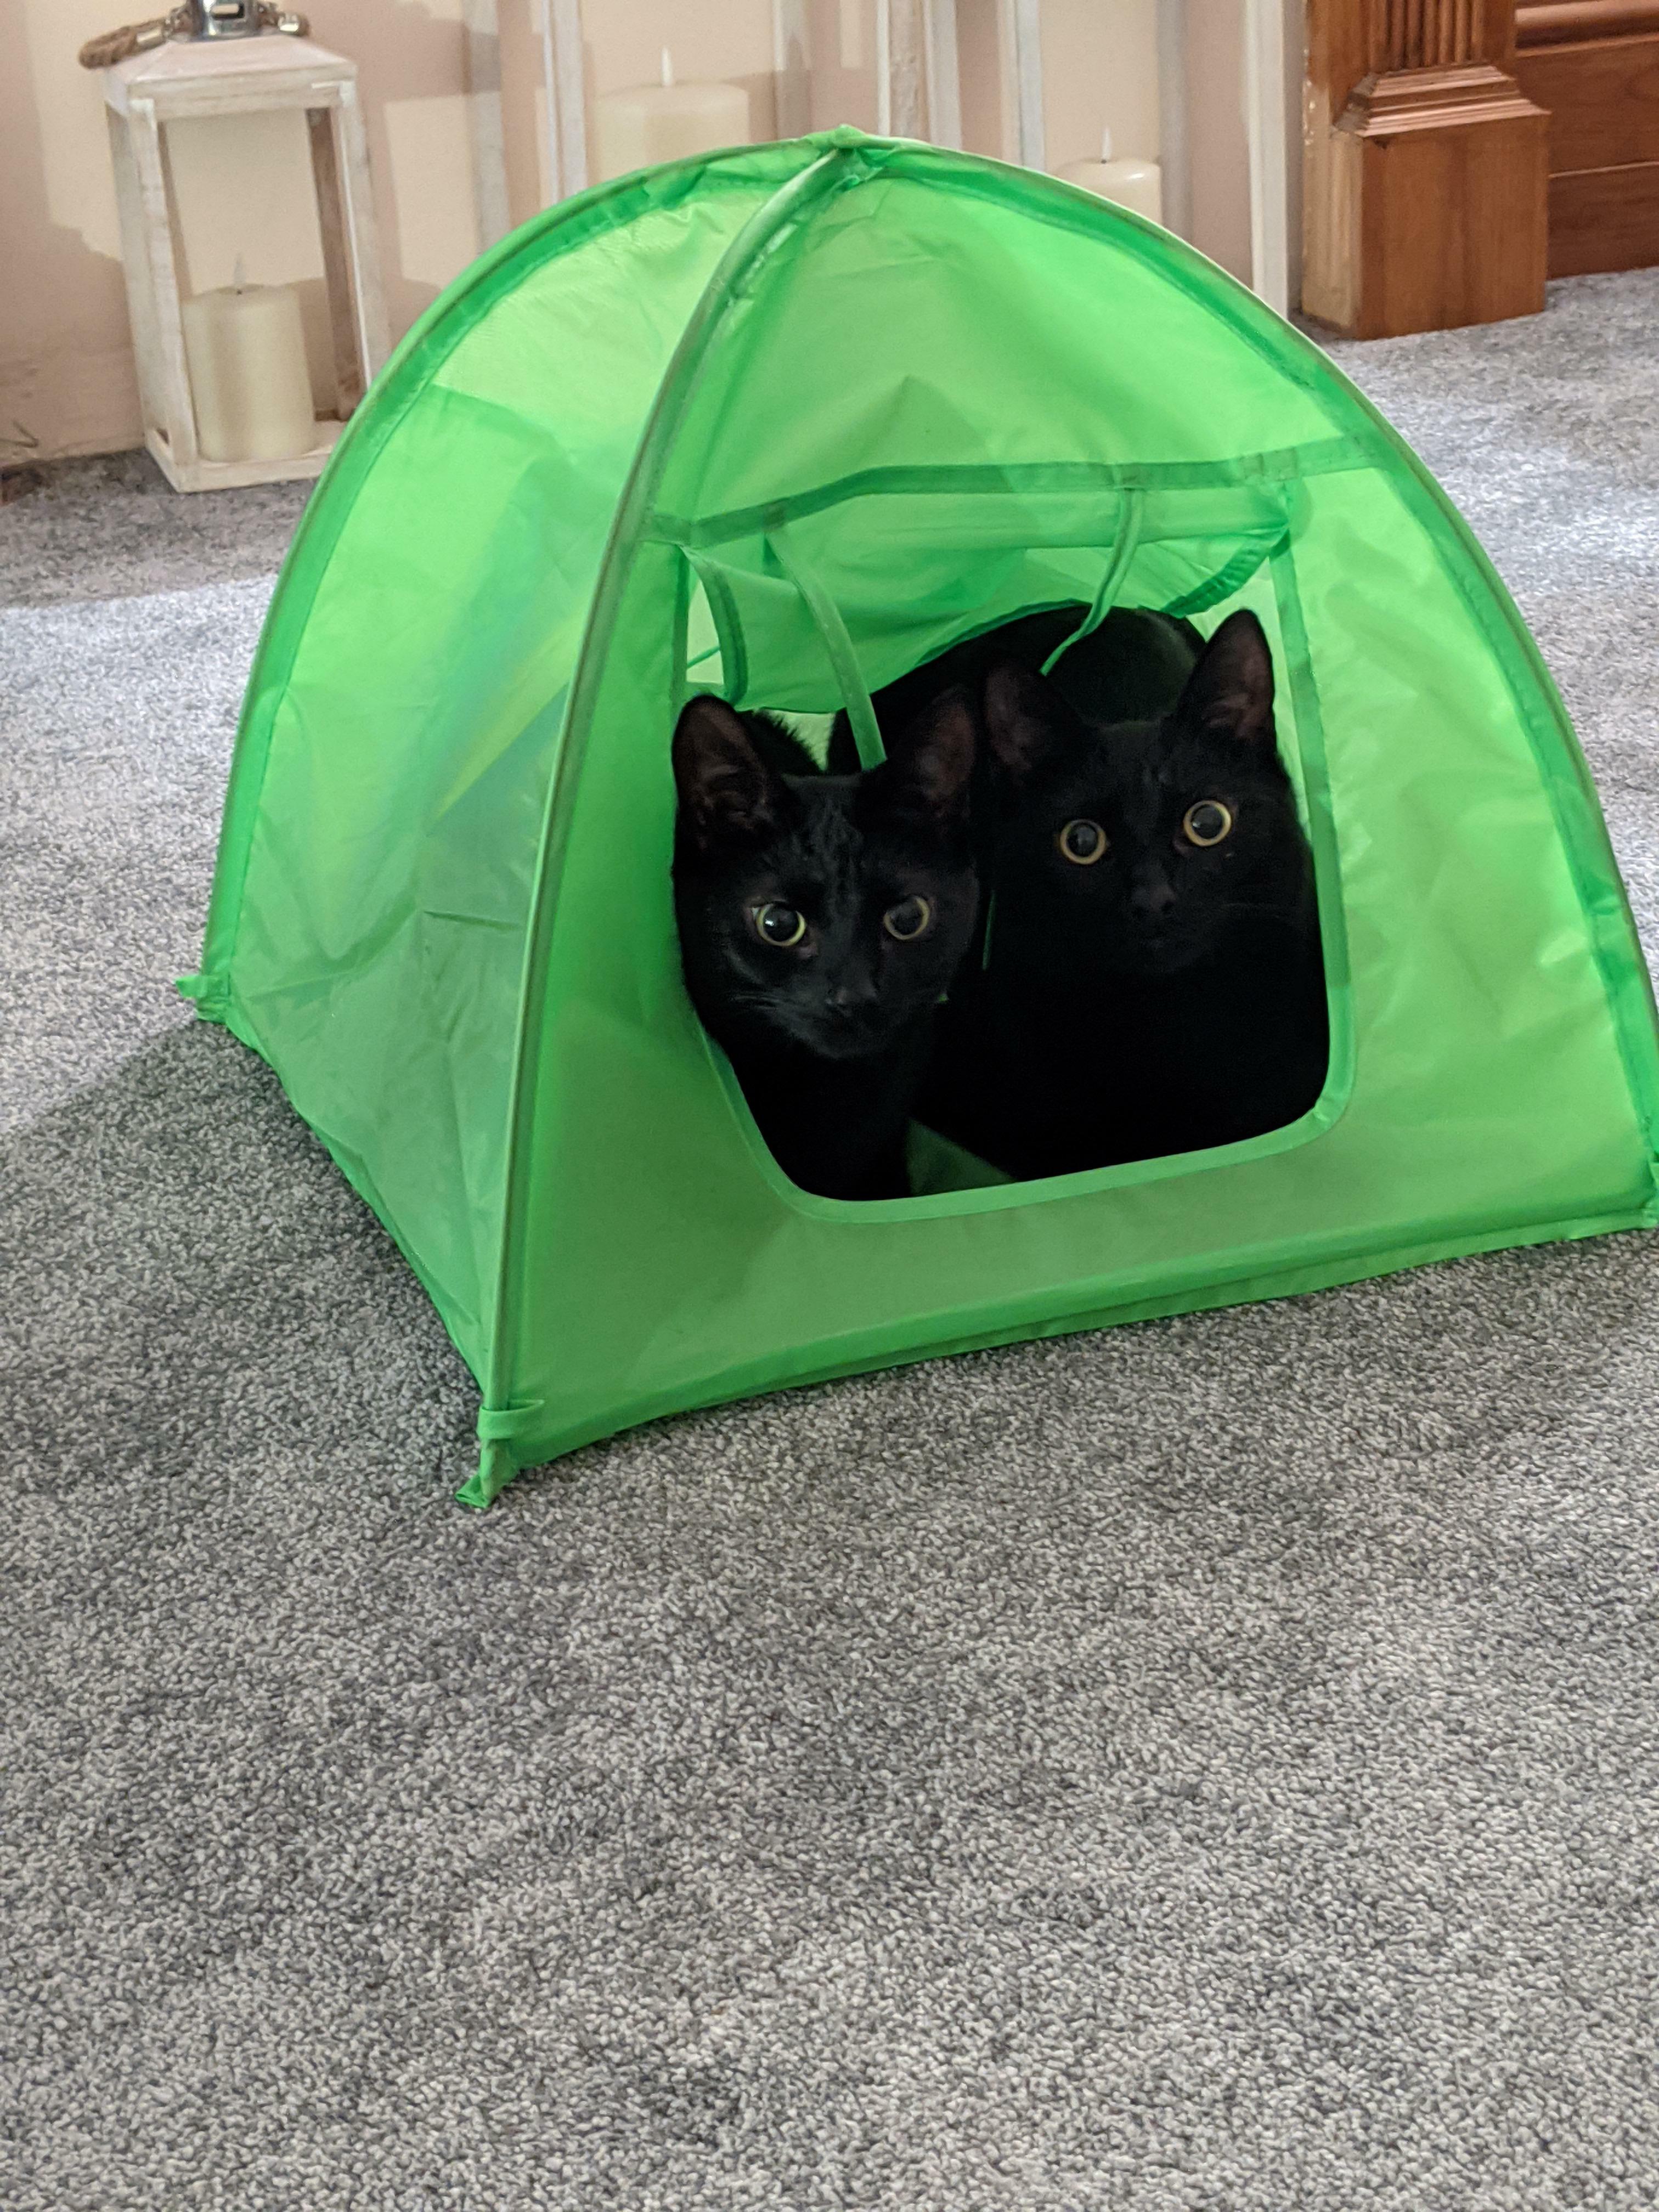 J'ai acheté une tente aux chats. C'est probablement la meilleure chose à faire en 2020.